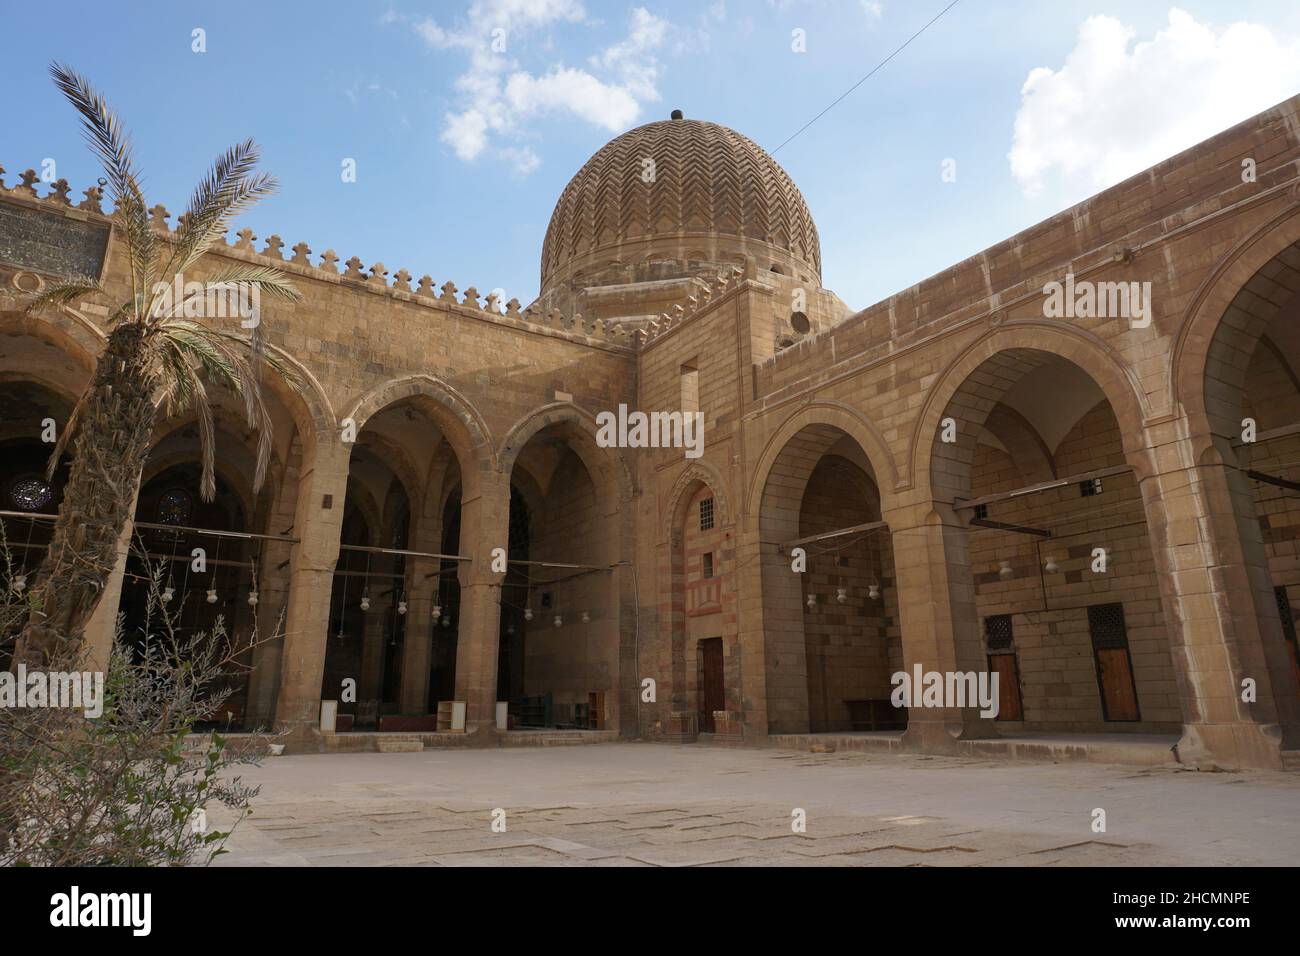 Cortile del Sultano al-Ashraf Qaytbay Moschea e Mausoleo Foto Stock